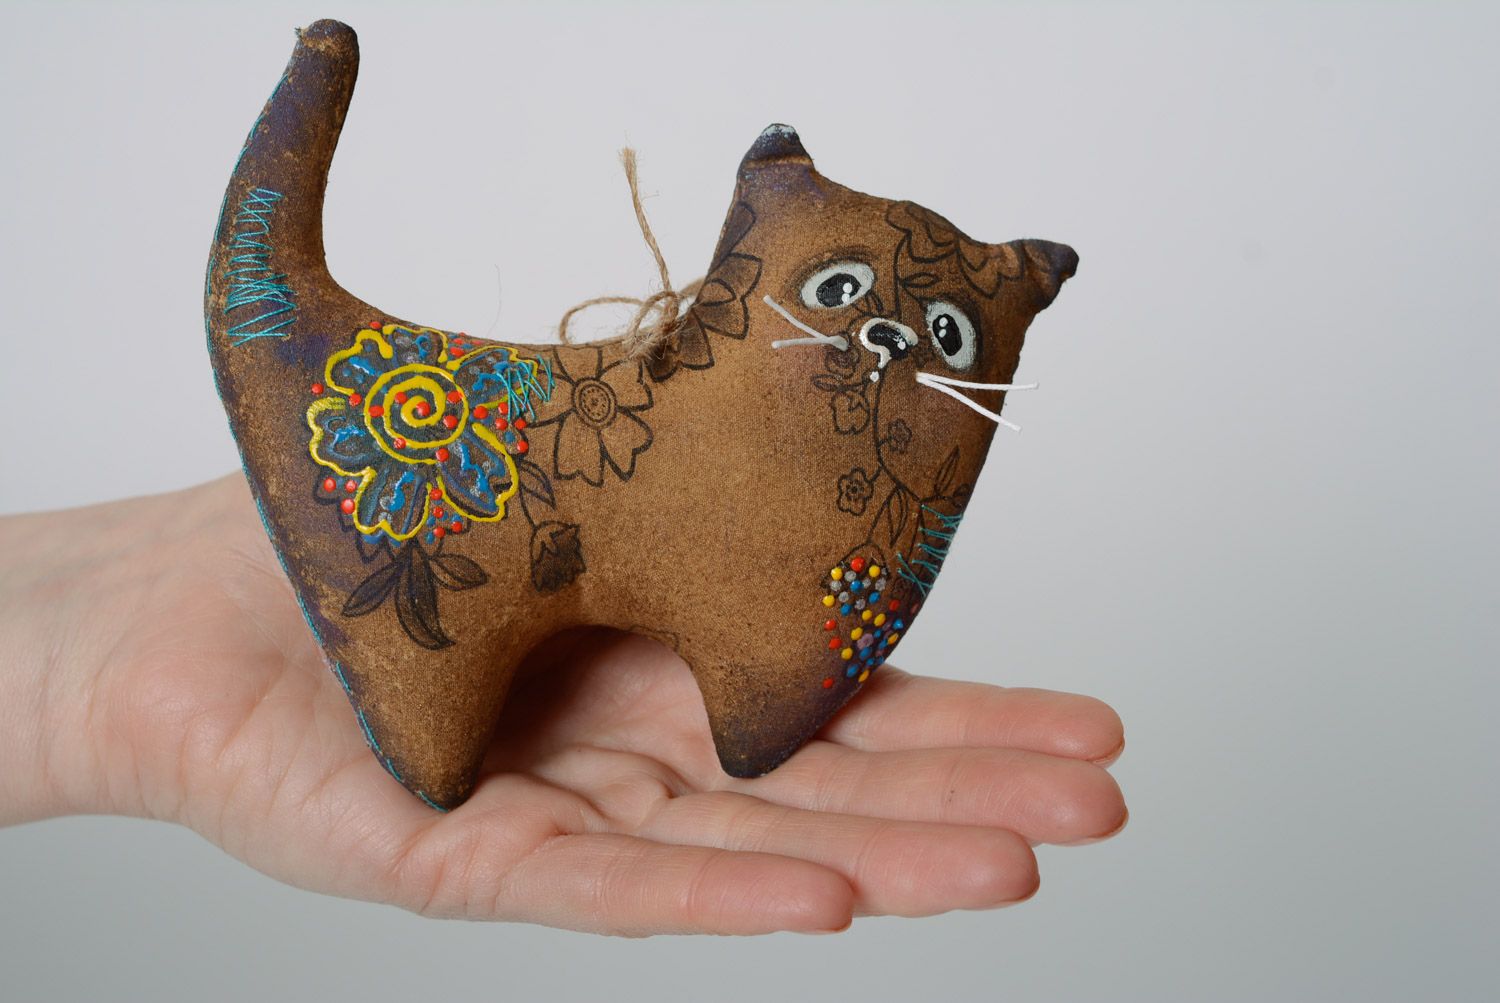 Handmade Spielzeug mit Aroma von Kaffee Kater aus Baumwolle mit Acrylfarben bemalt foto 3